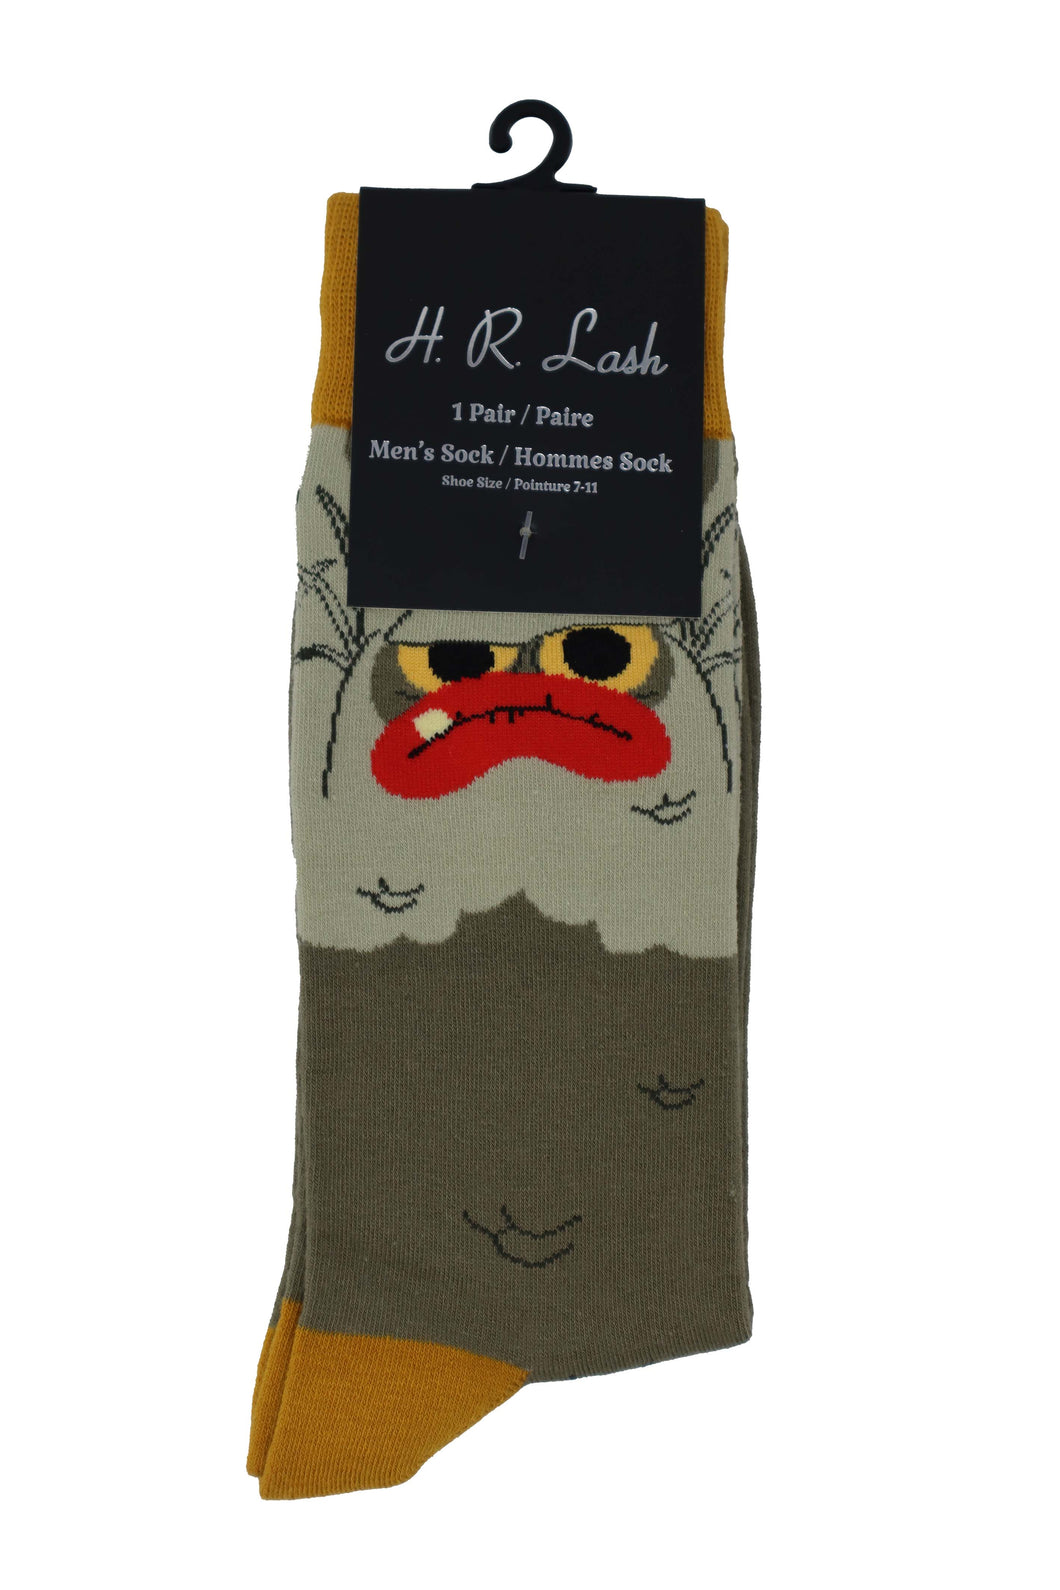 H. R. Lash | FS311 | Fun Socks | Grouchy / Green